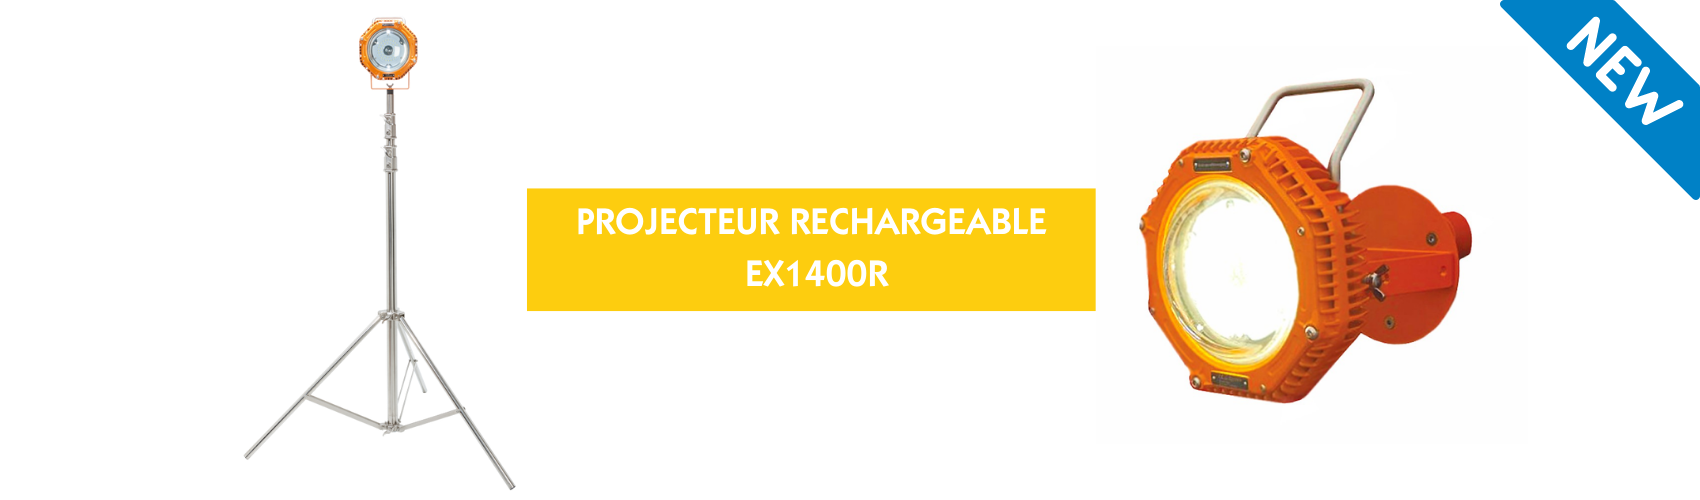 NOUVEAUTÉ PRODUIT _ PROJECTEUR RECHARGEABLE EX1400R